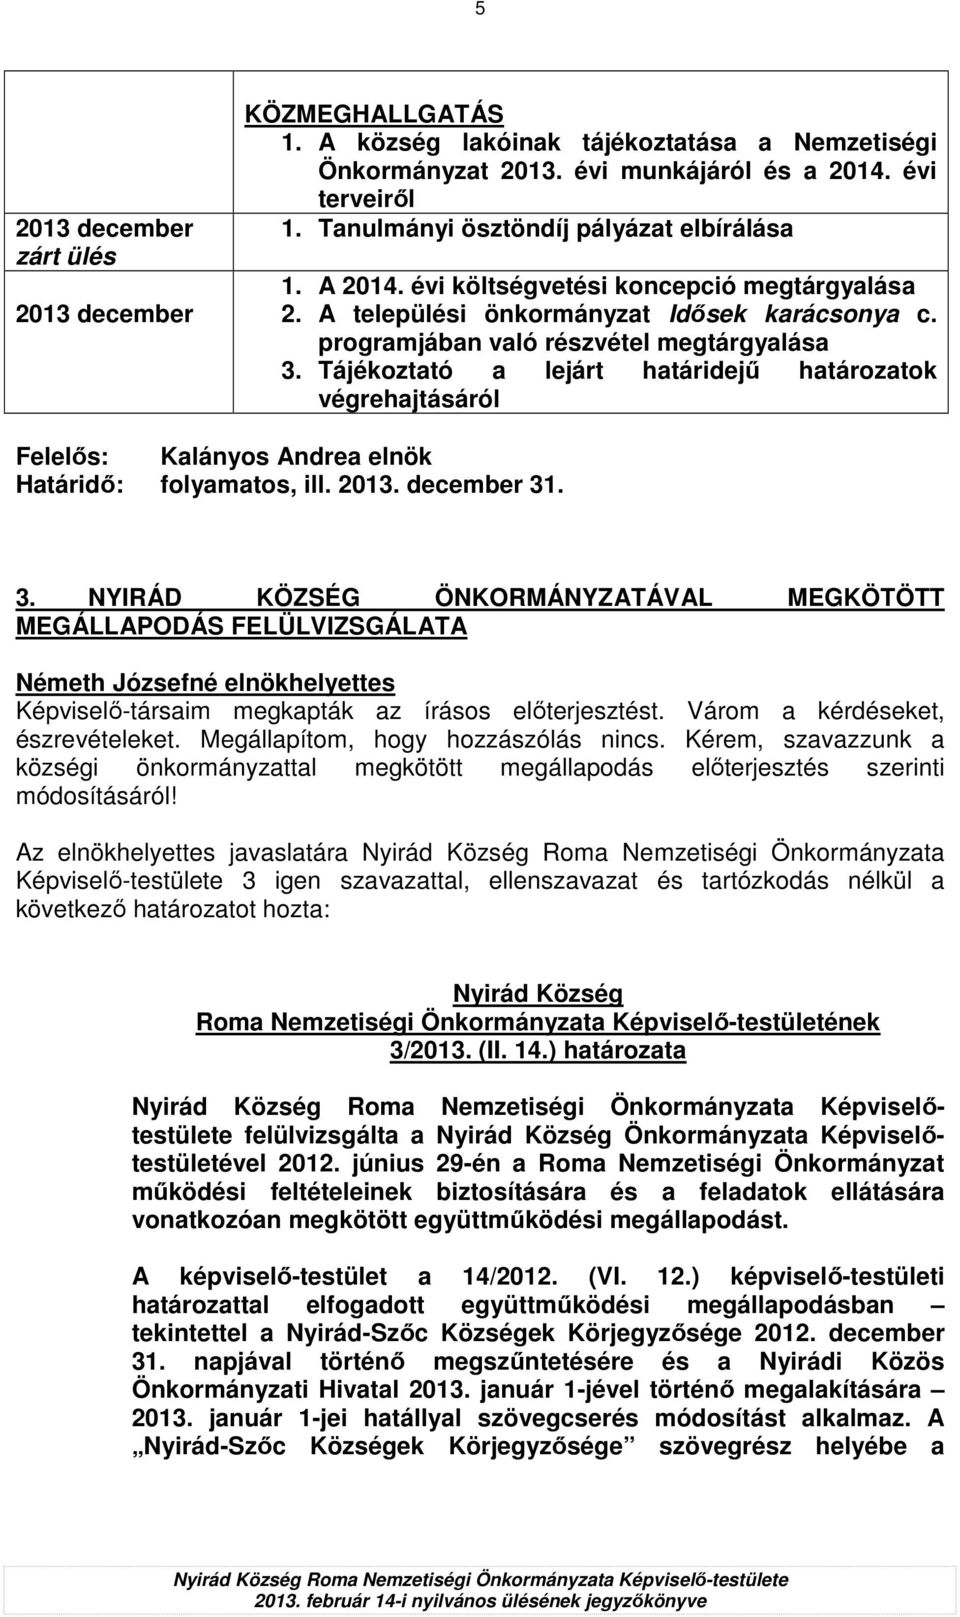 Tájékoztató a lejárt határidejő határozatok Felelıs: Kalányos Andrea elnök Határidı: folyamatos, ill. 2013. december 31